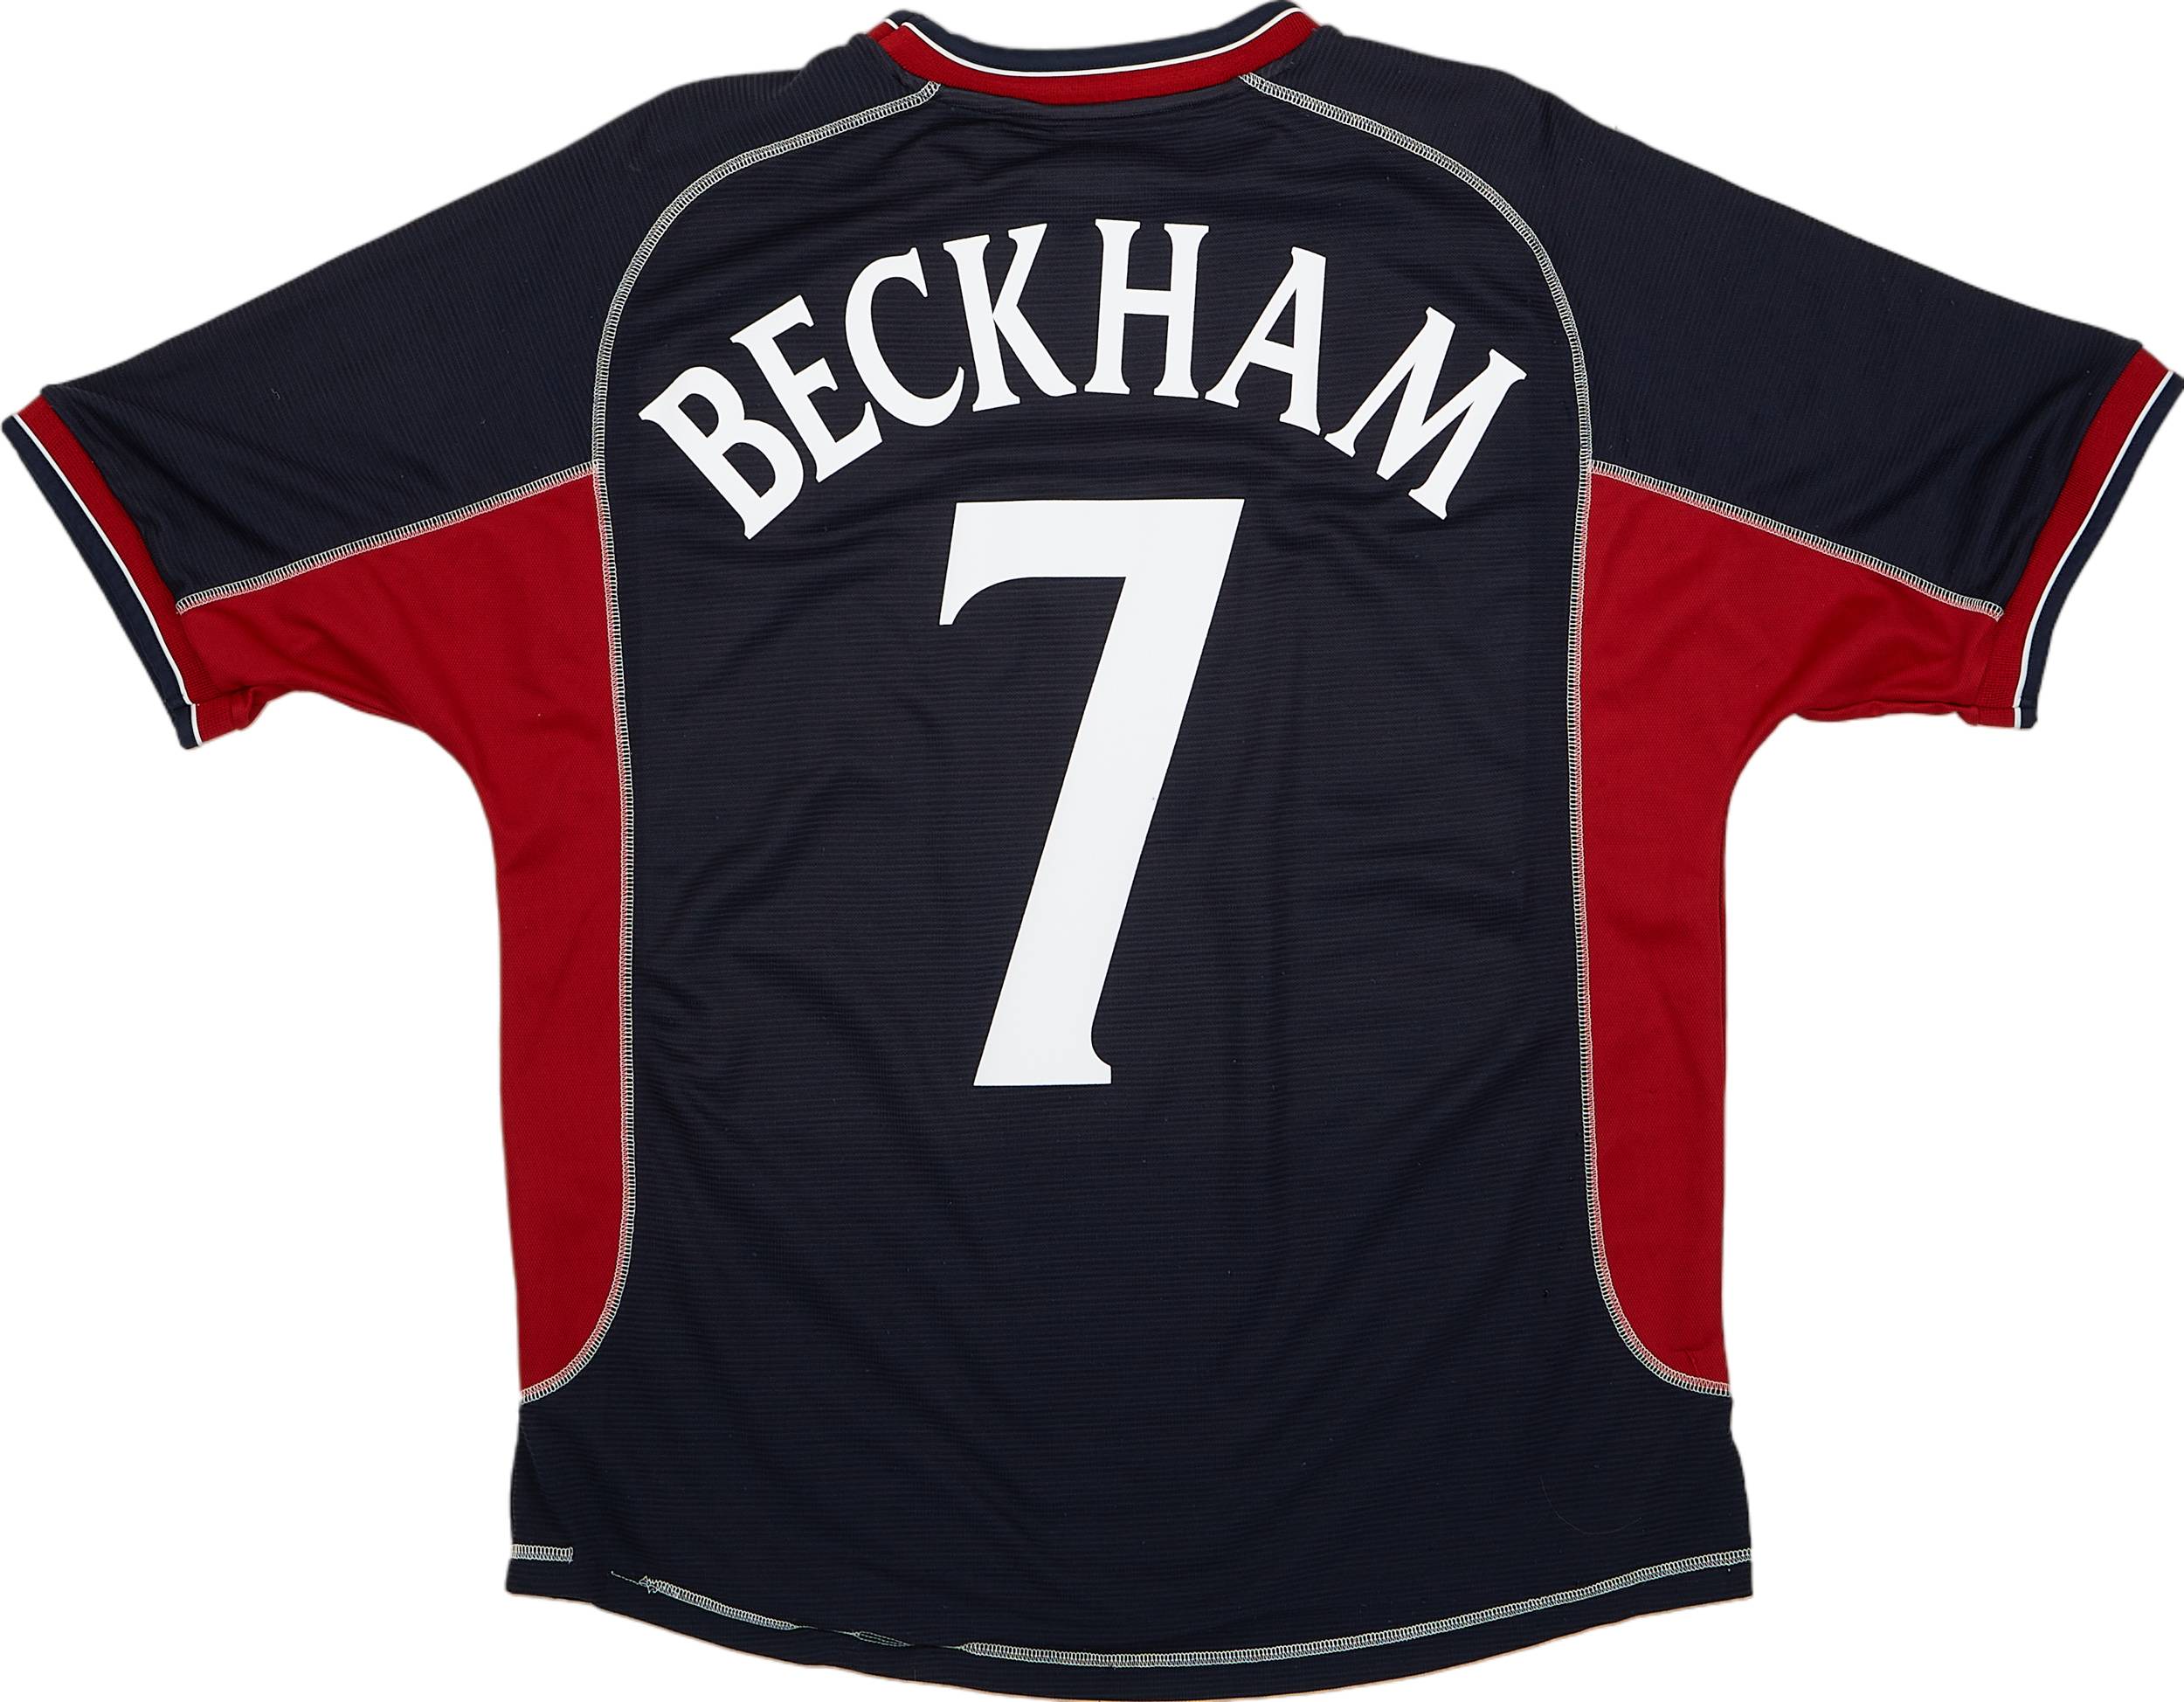 2000-01 Manchester United Third Shirt Beckham #7 - 8/10 - (L)